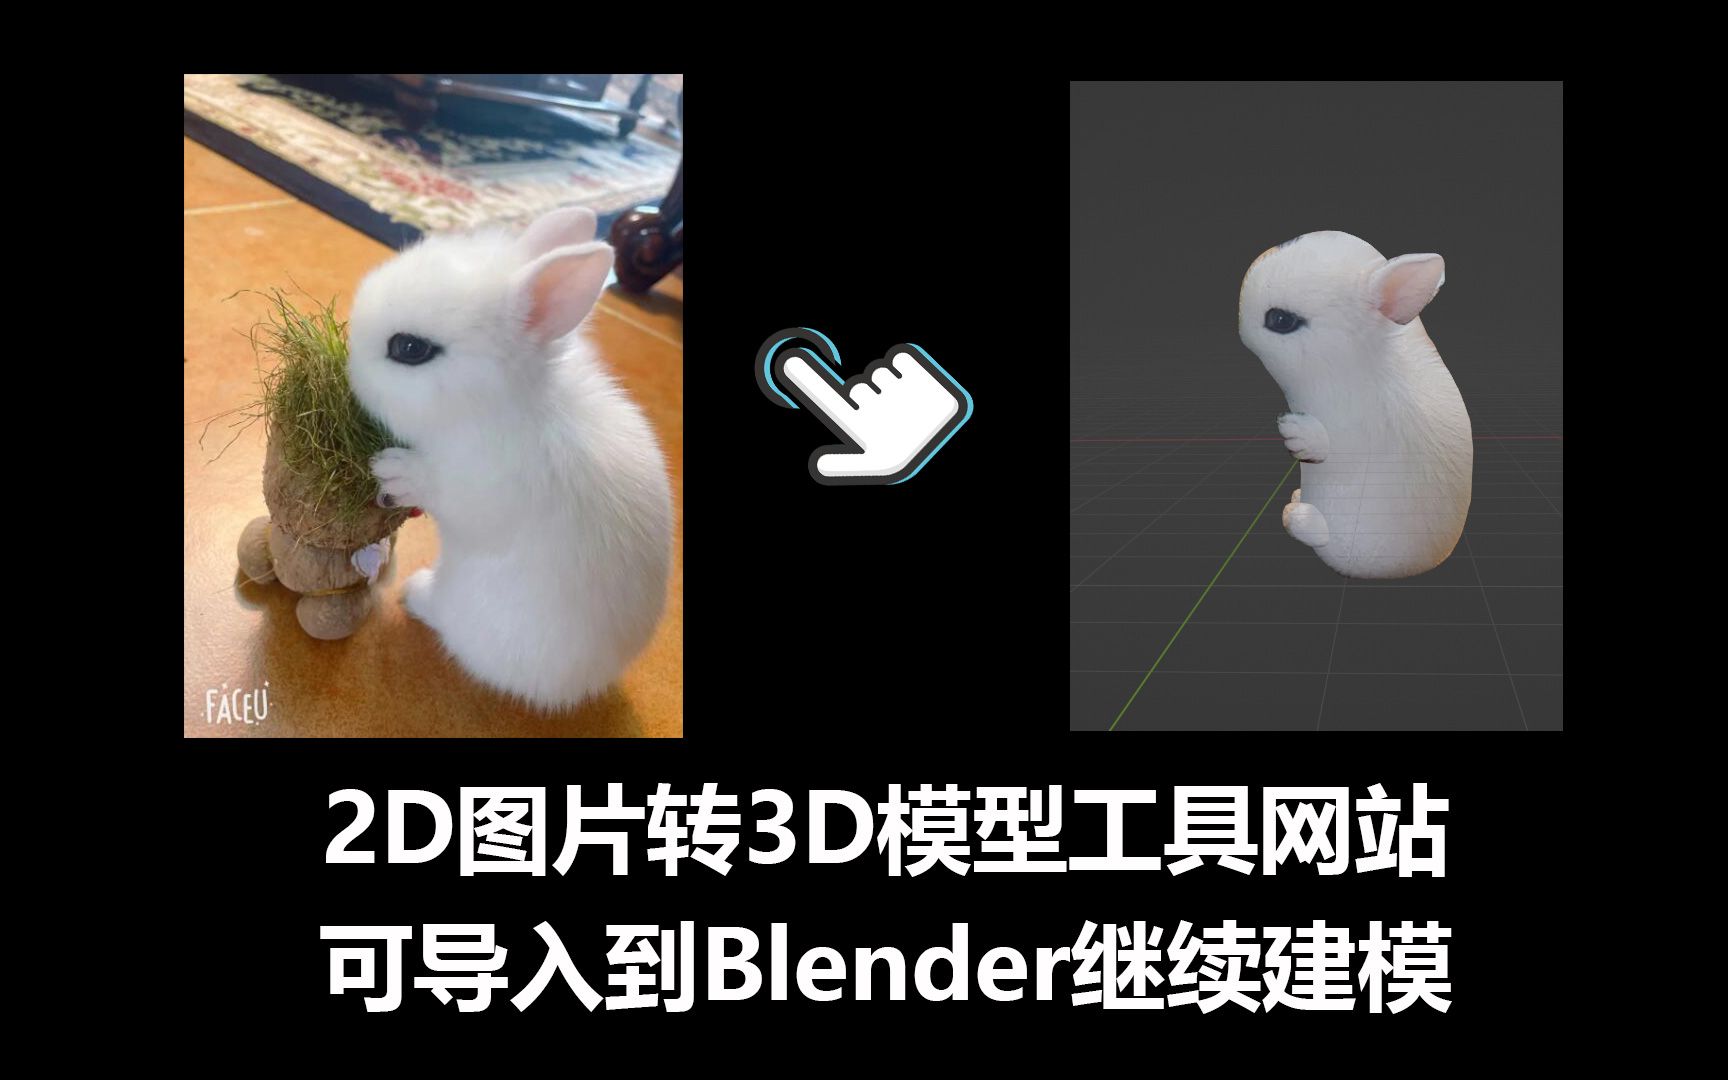 2D图片转3D模型工具网站 可导入到Blender继续建模